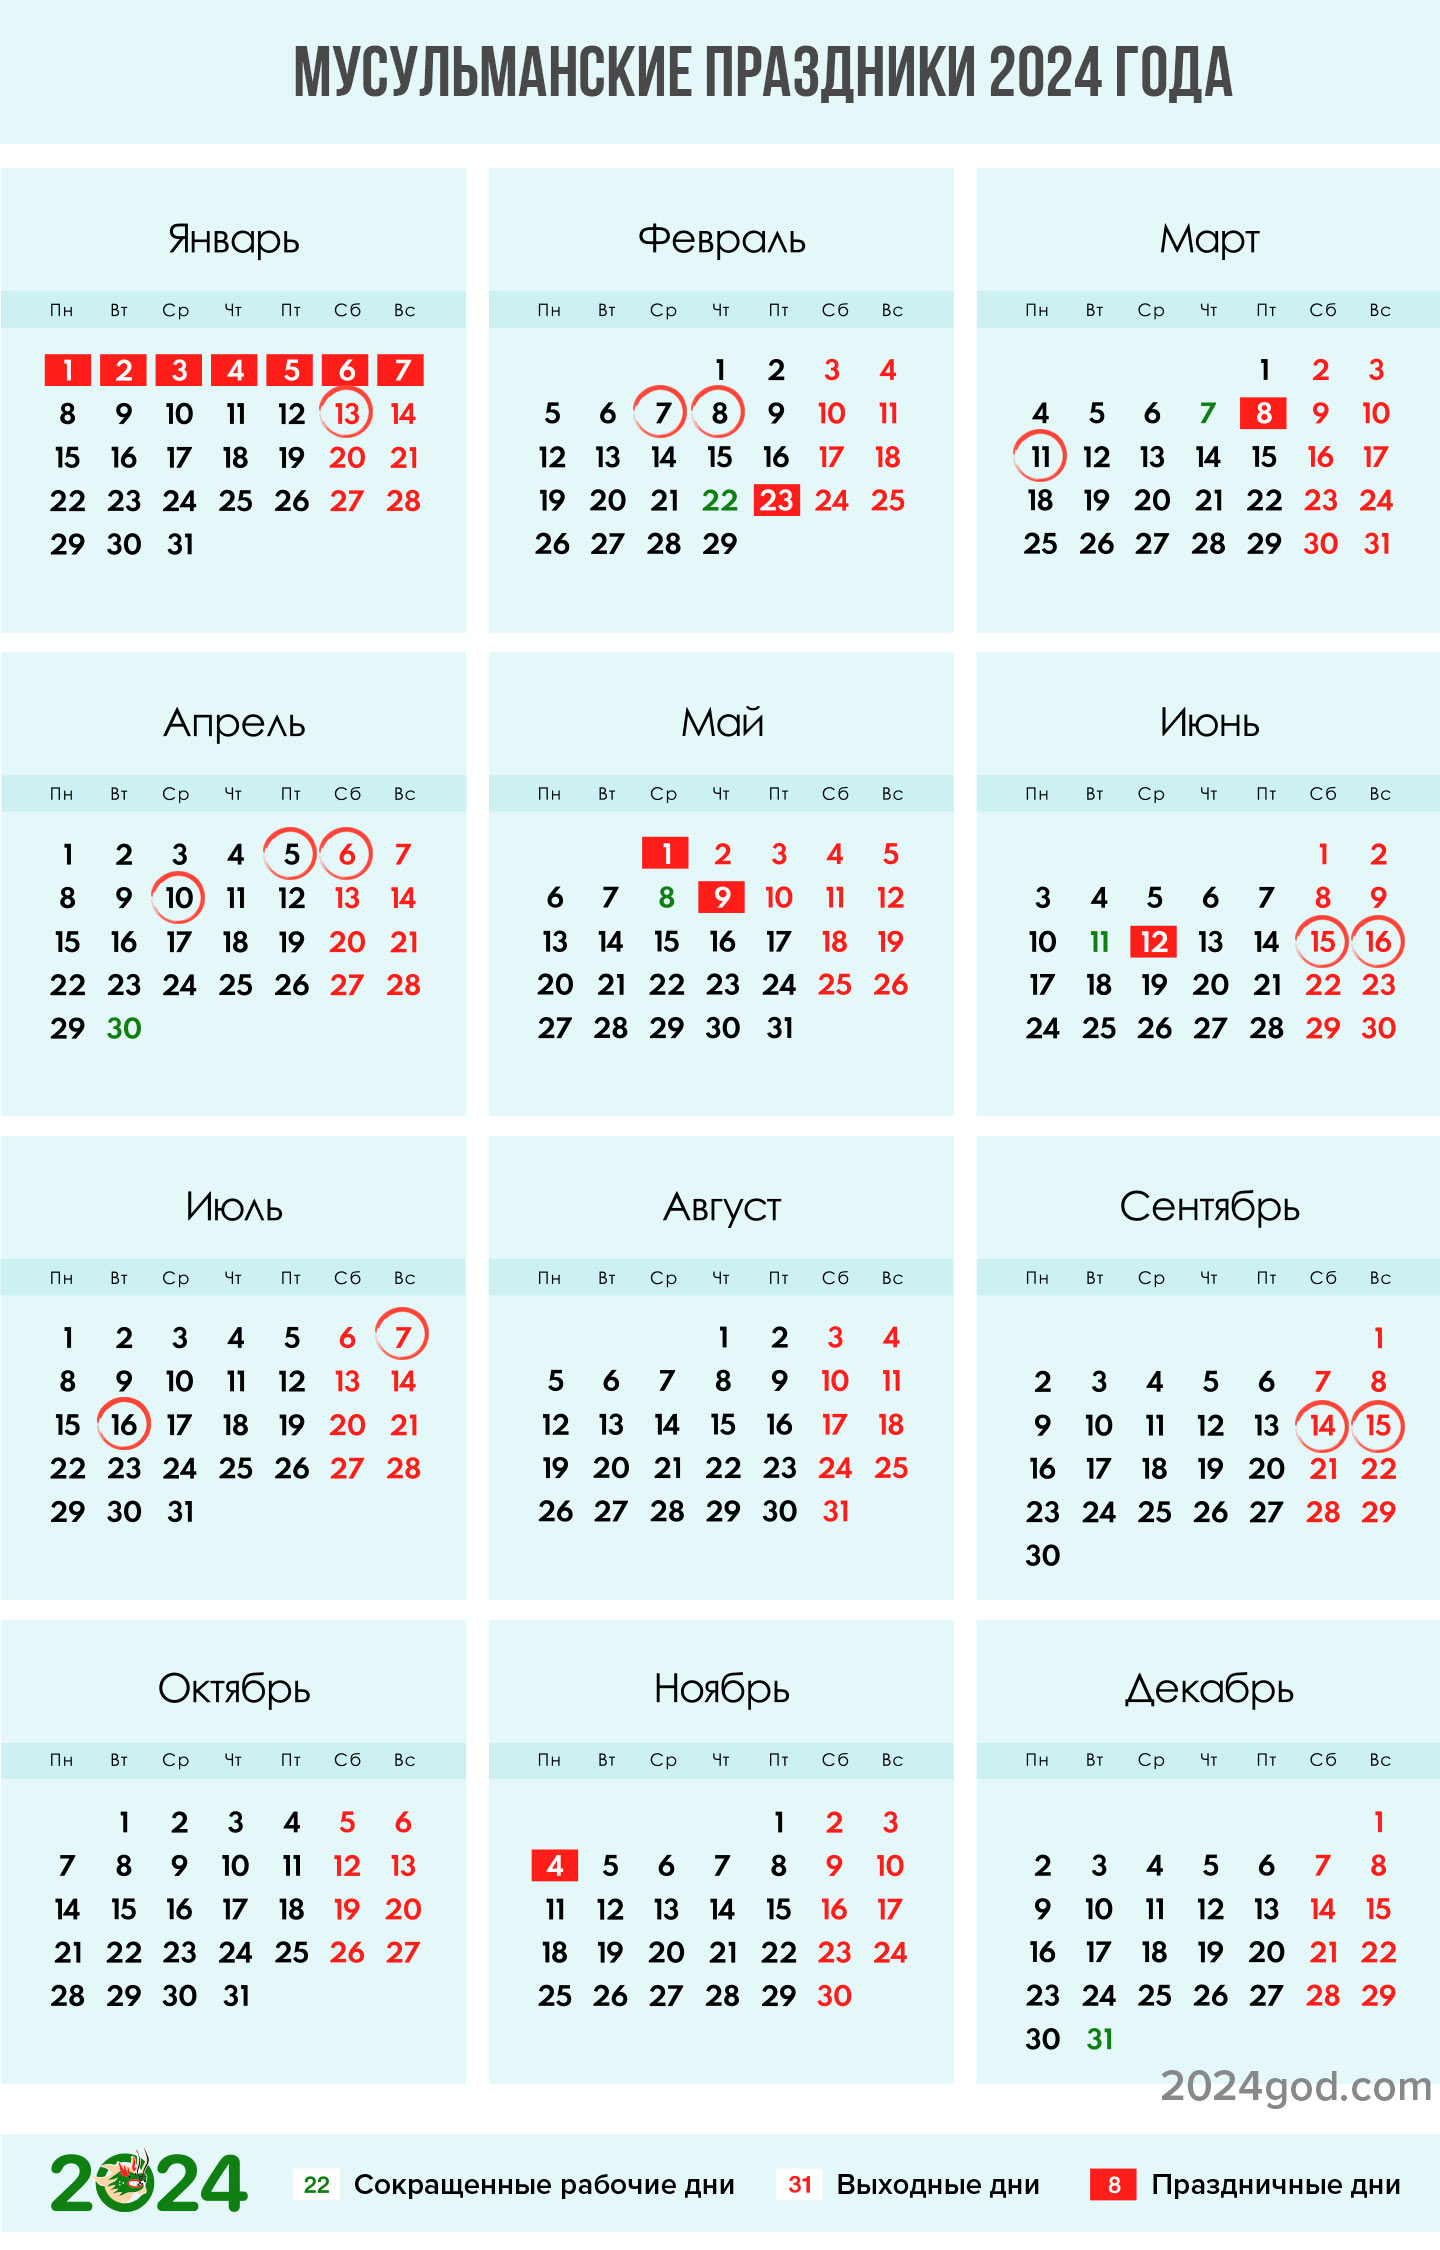 Мусульманские праздники в 2024 году: календарь